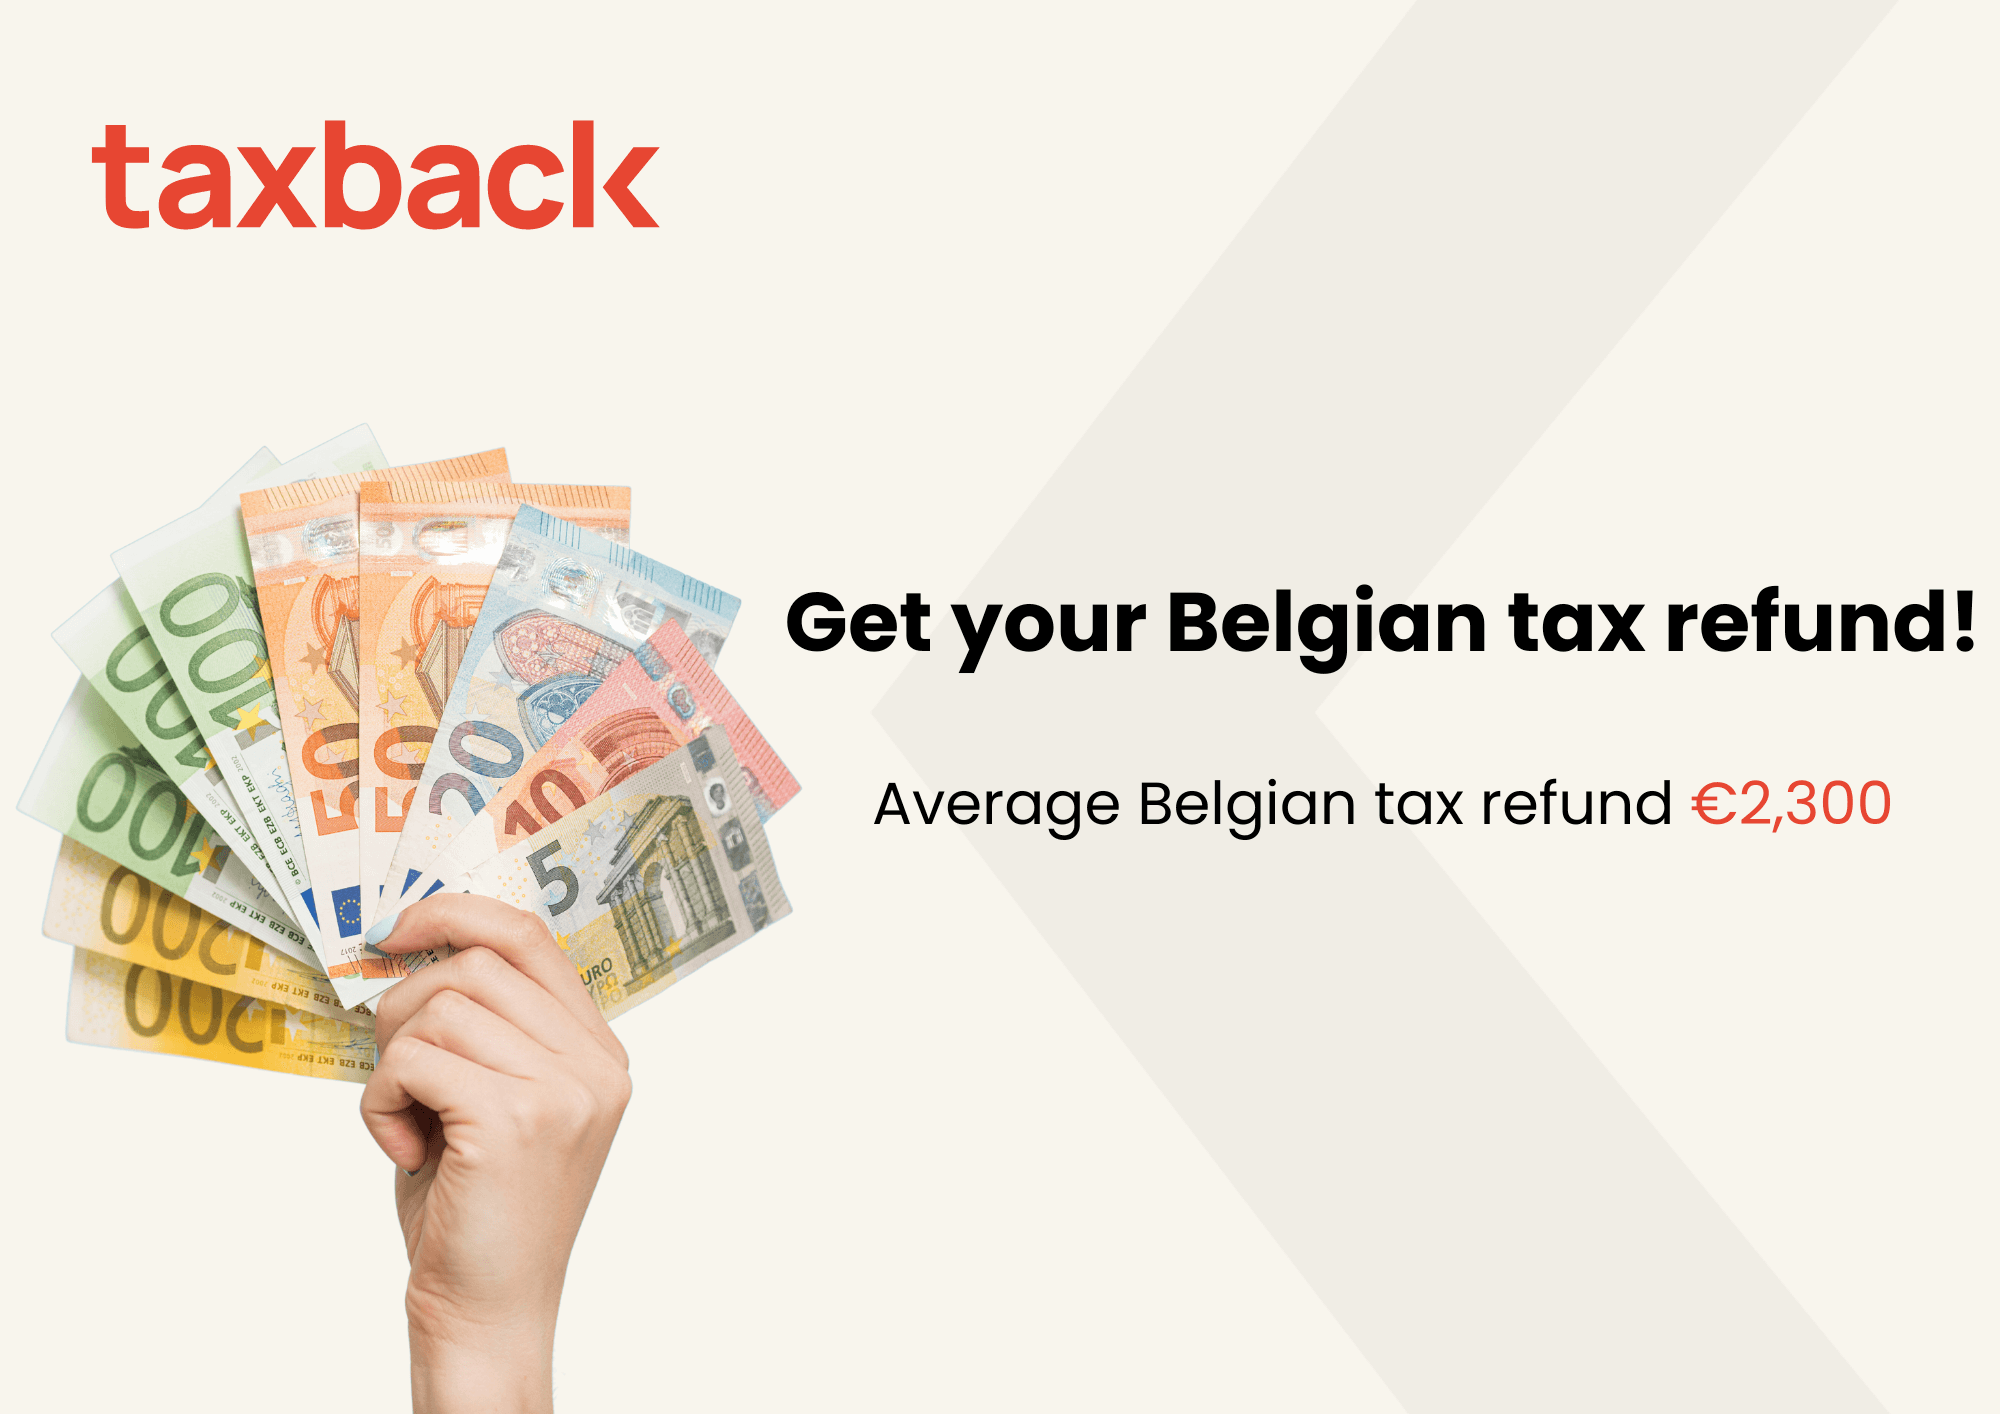 Get your Belgian tax refund! Average Belgian tax refund €2,300